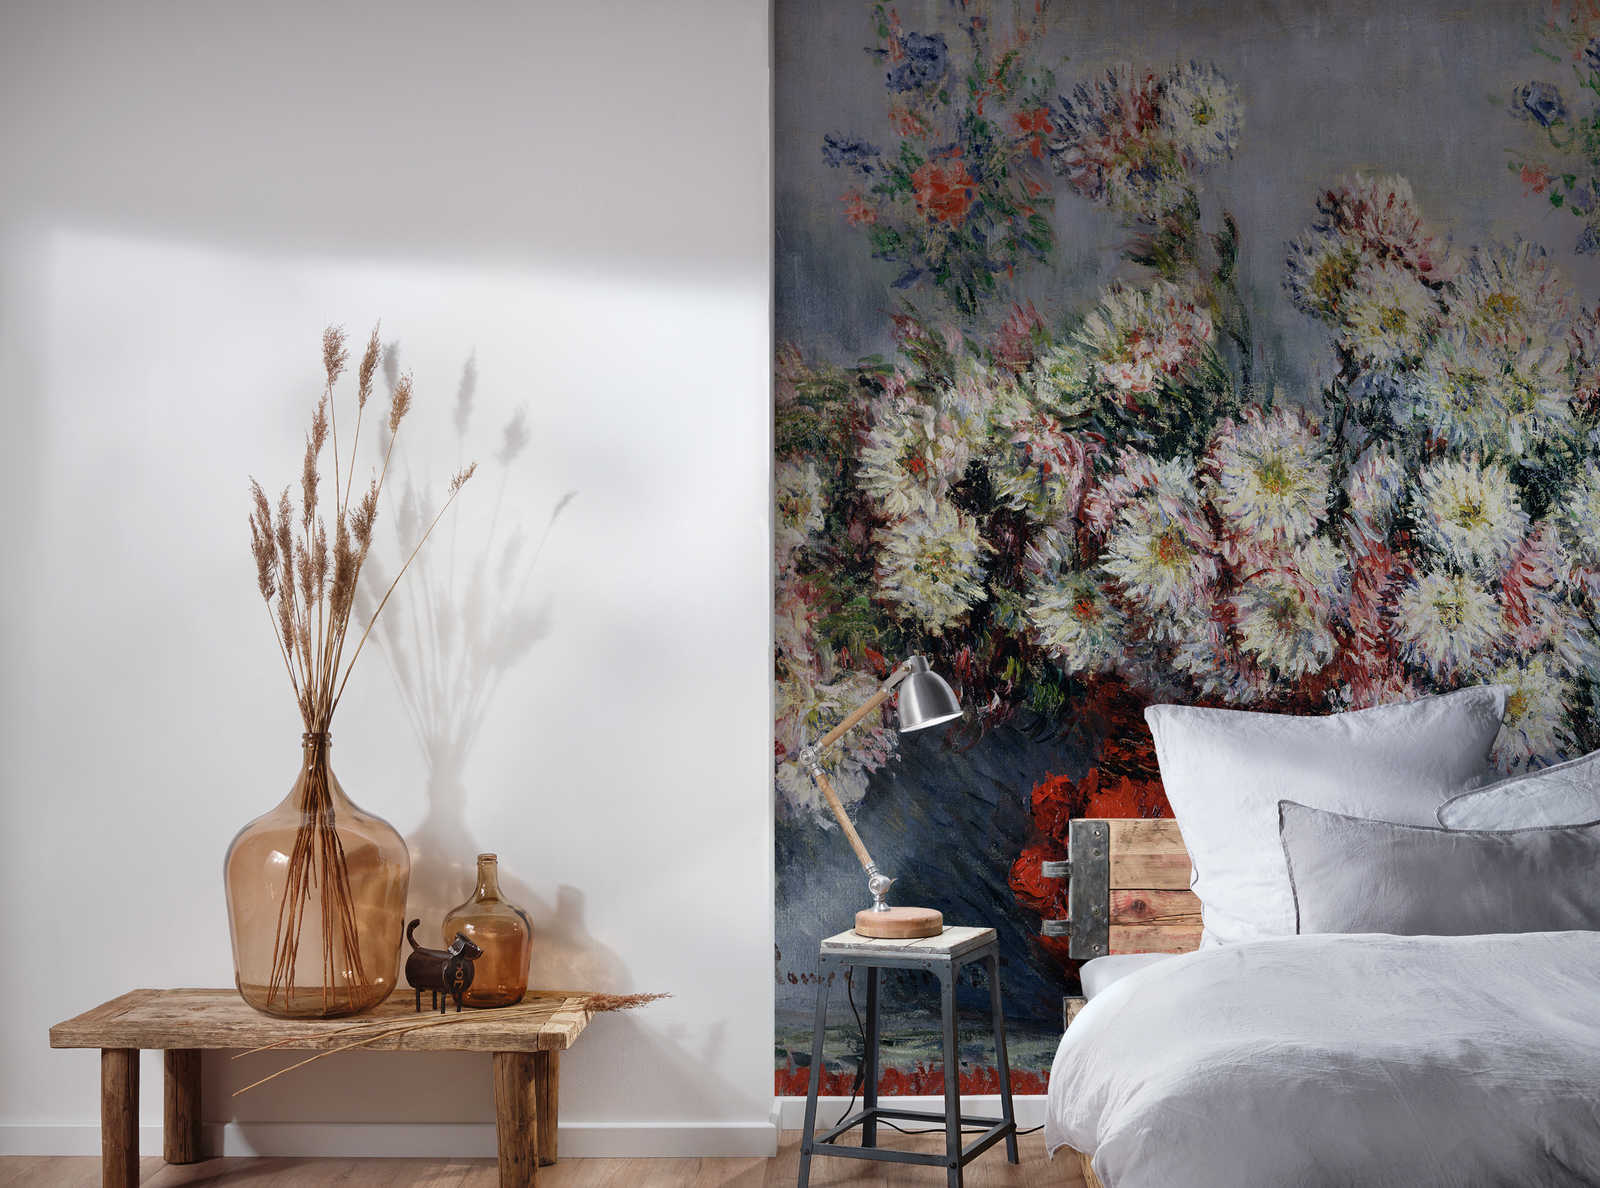             Mural "Crisantemos" de Claude Monet
        